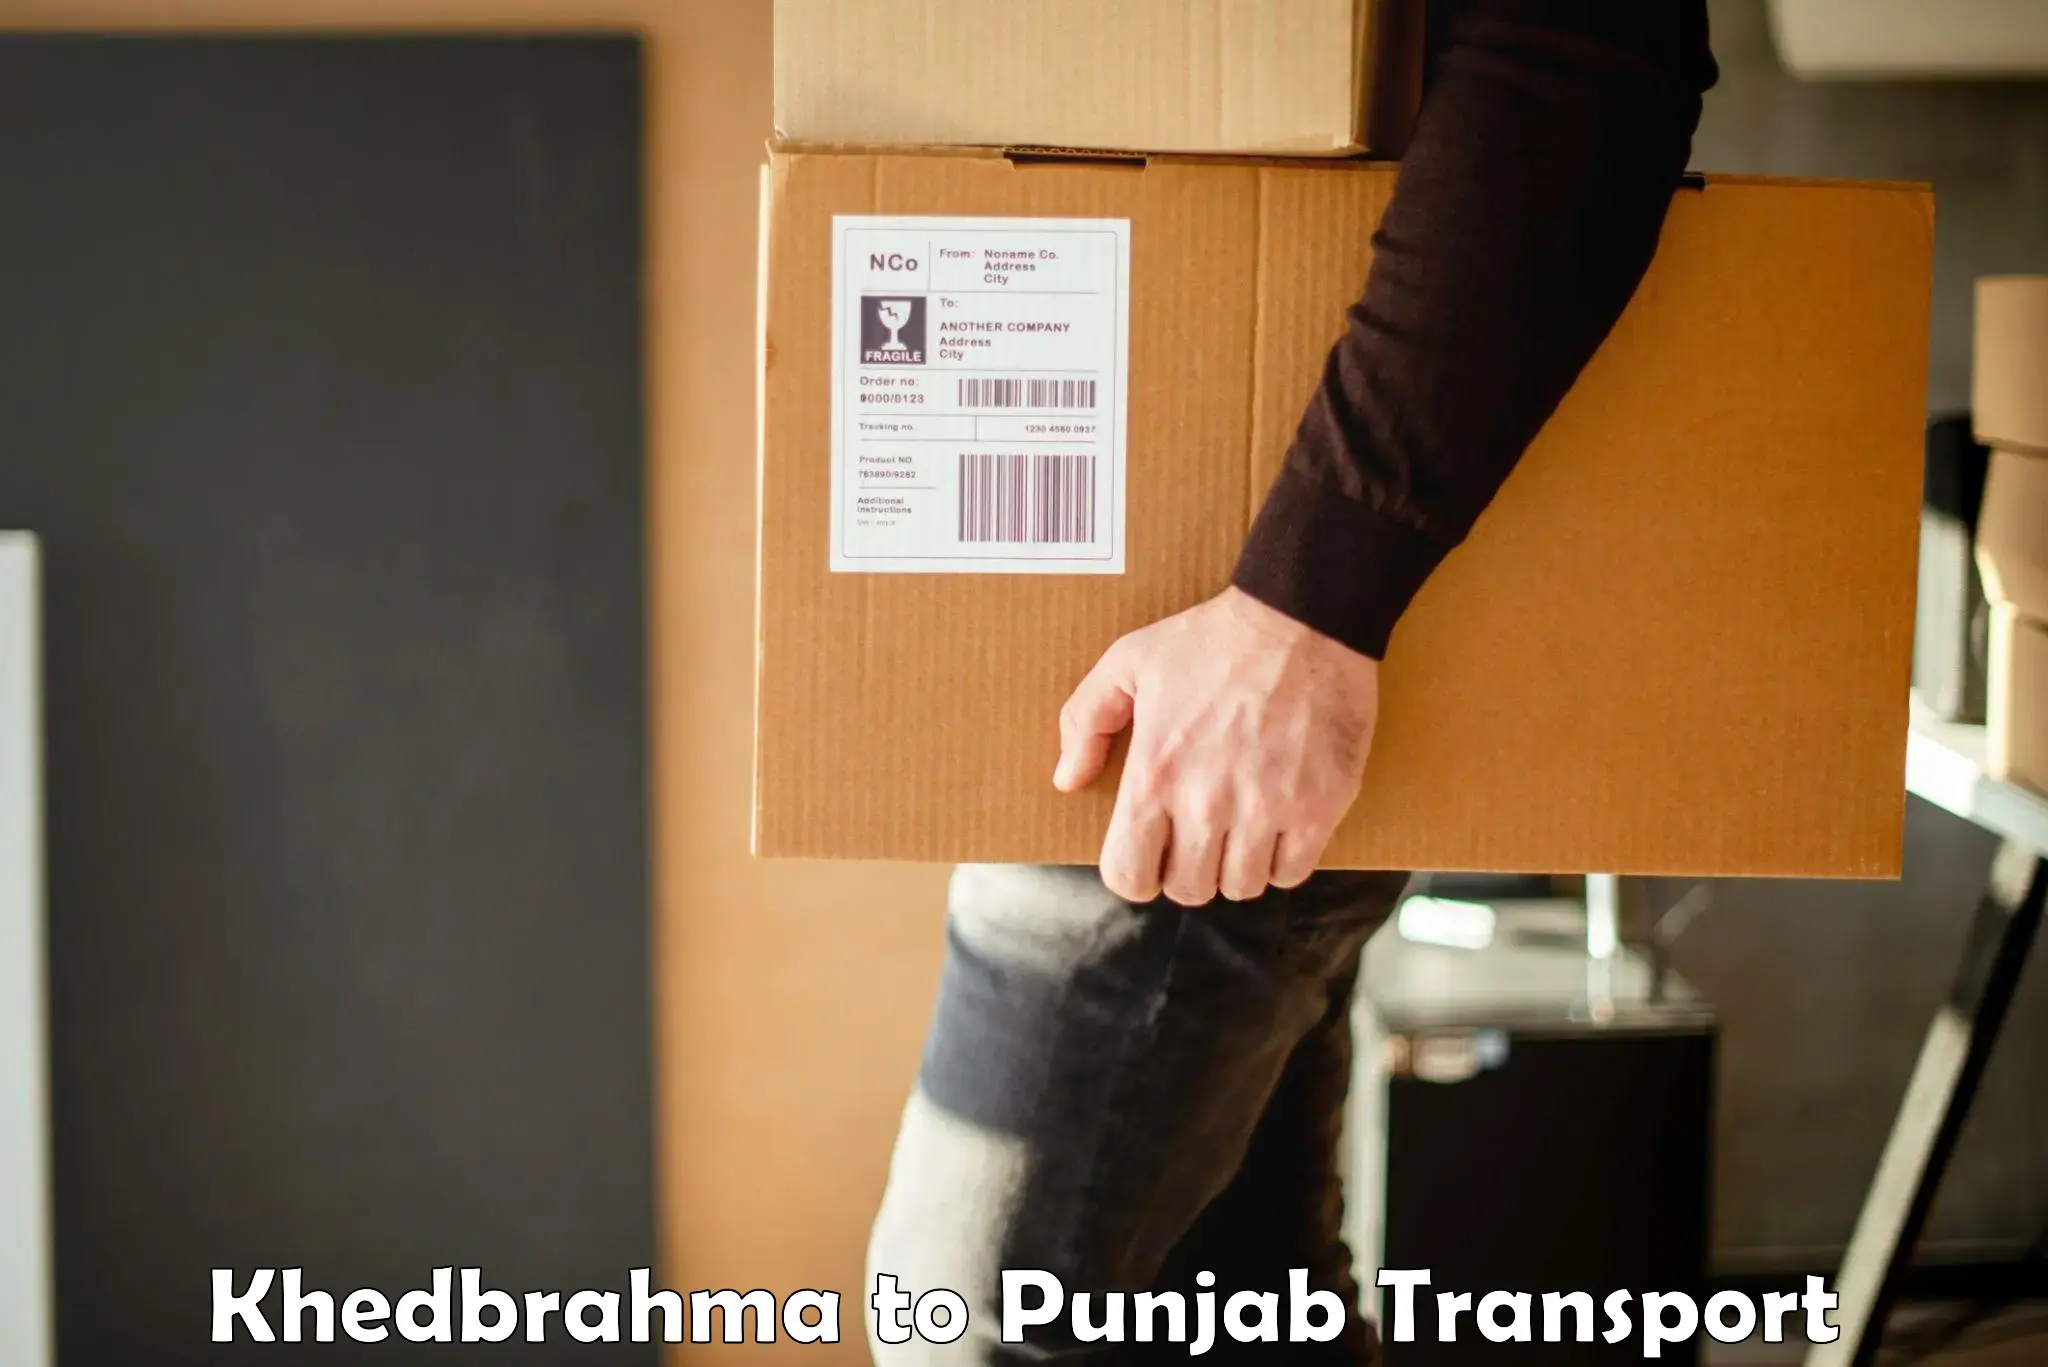 Online transport service Khedbrahma to Punjab